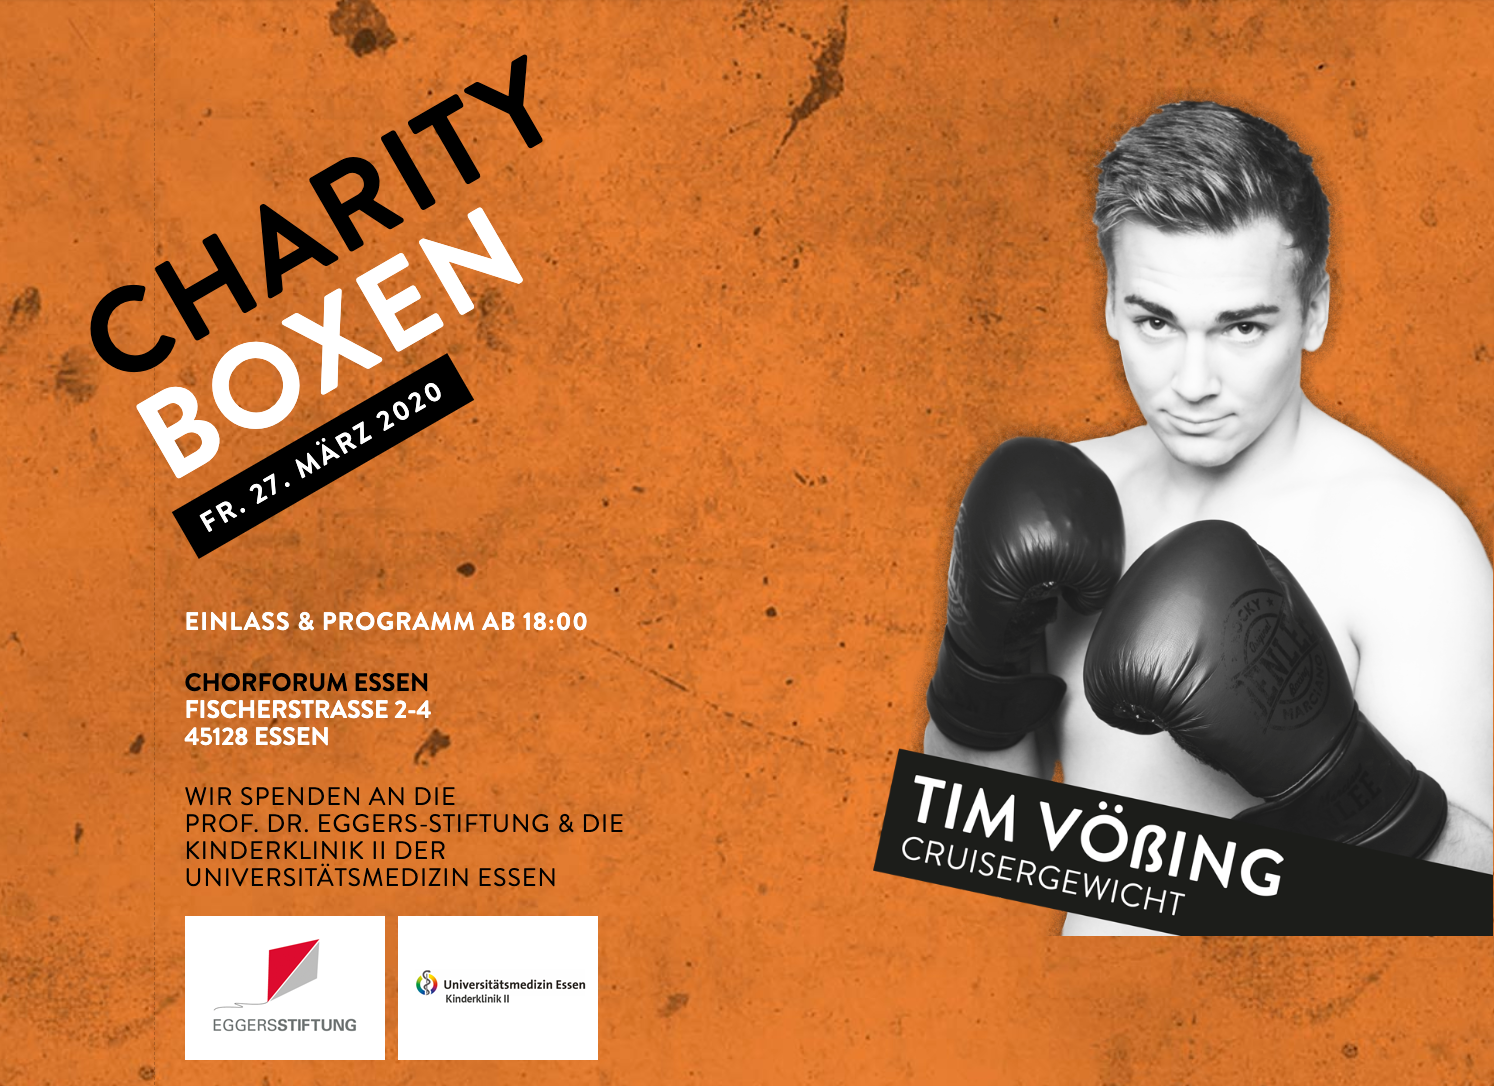 Charity-Boxen zugunsten der Prof. Dr. Eggers-Stiftung in Essen